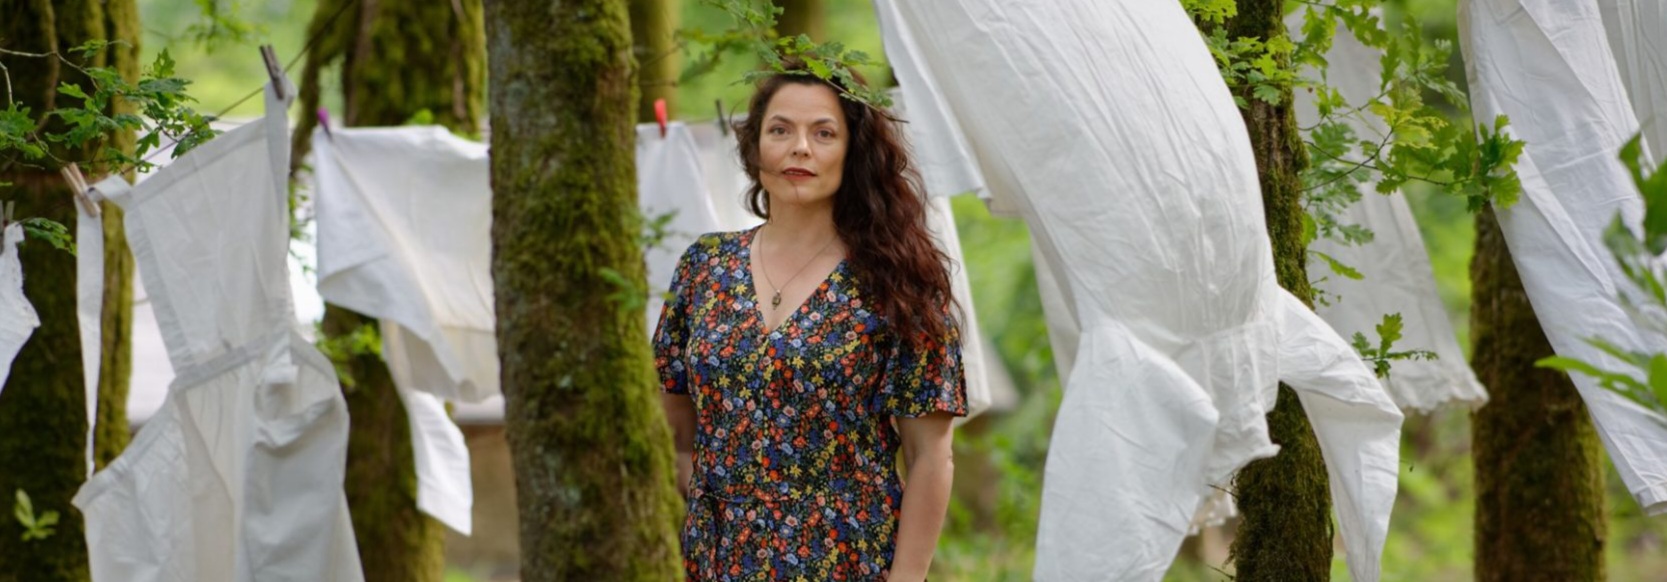 Marthe Vassallo pose en robe longue à fleurs au milieu des arbres. Des vêtements blancs sont étendus sur des cordes à linge autour d'elle.